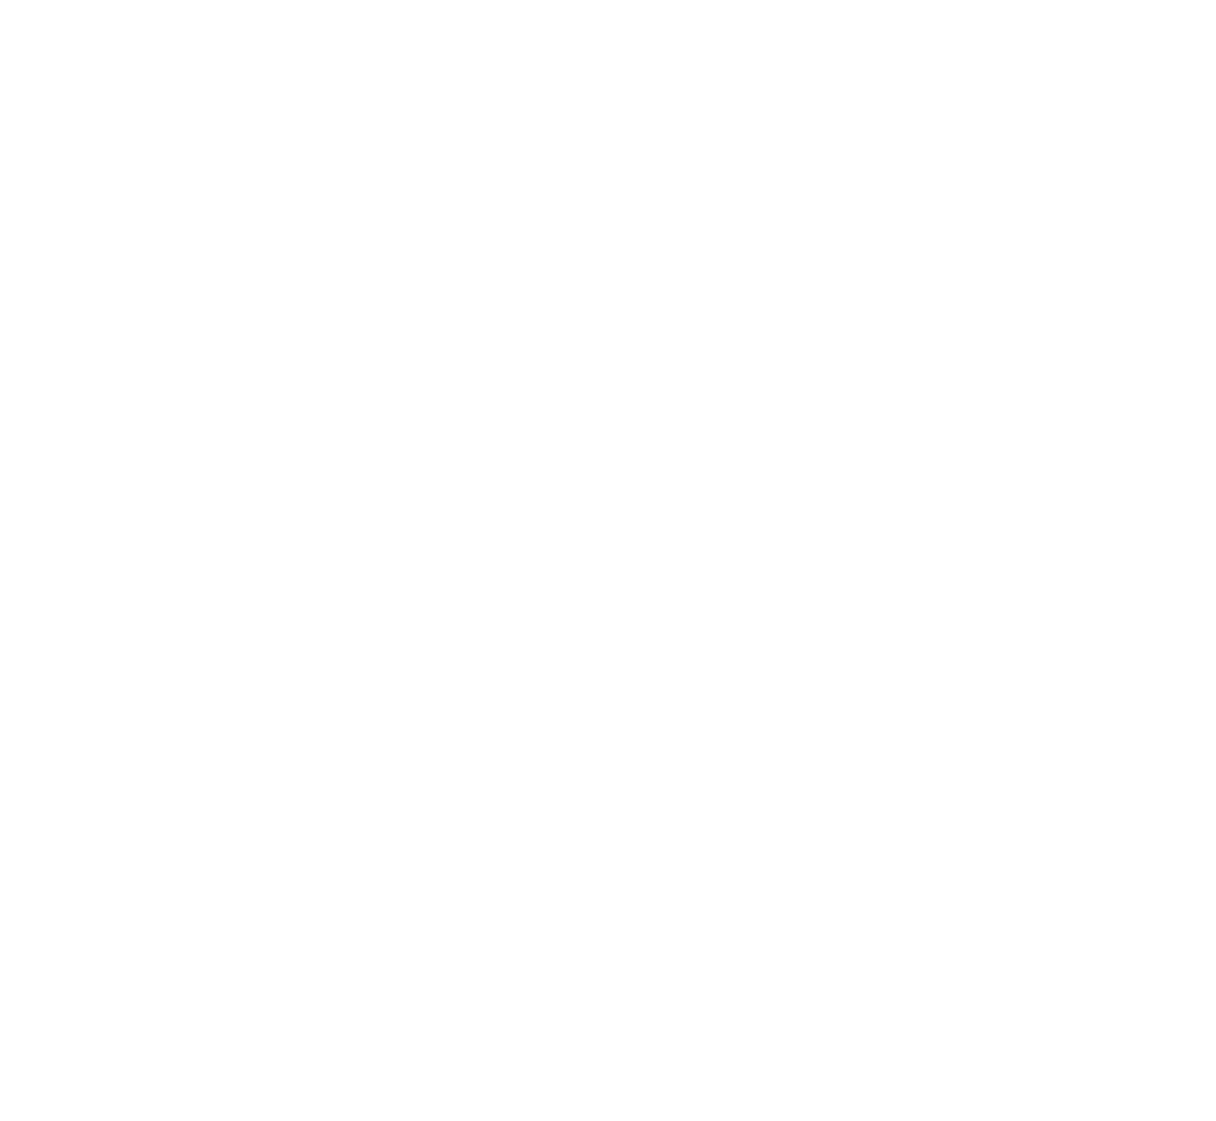 Prefeitura de São Paulo - Educação